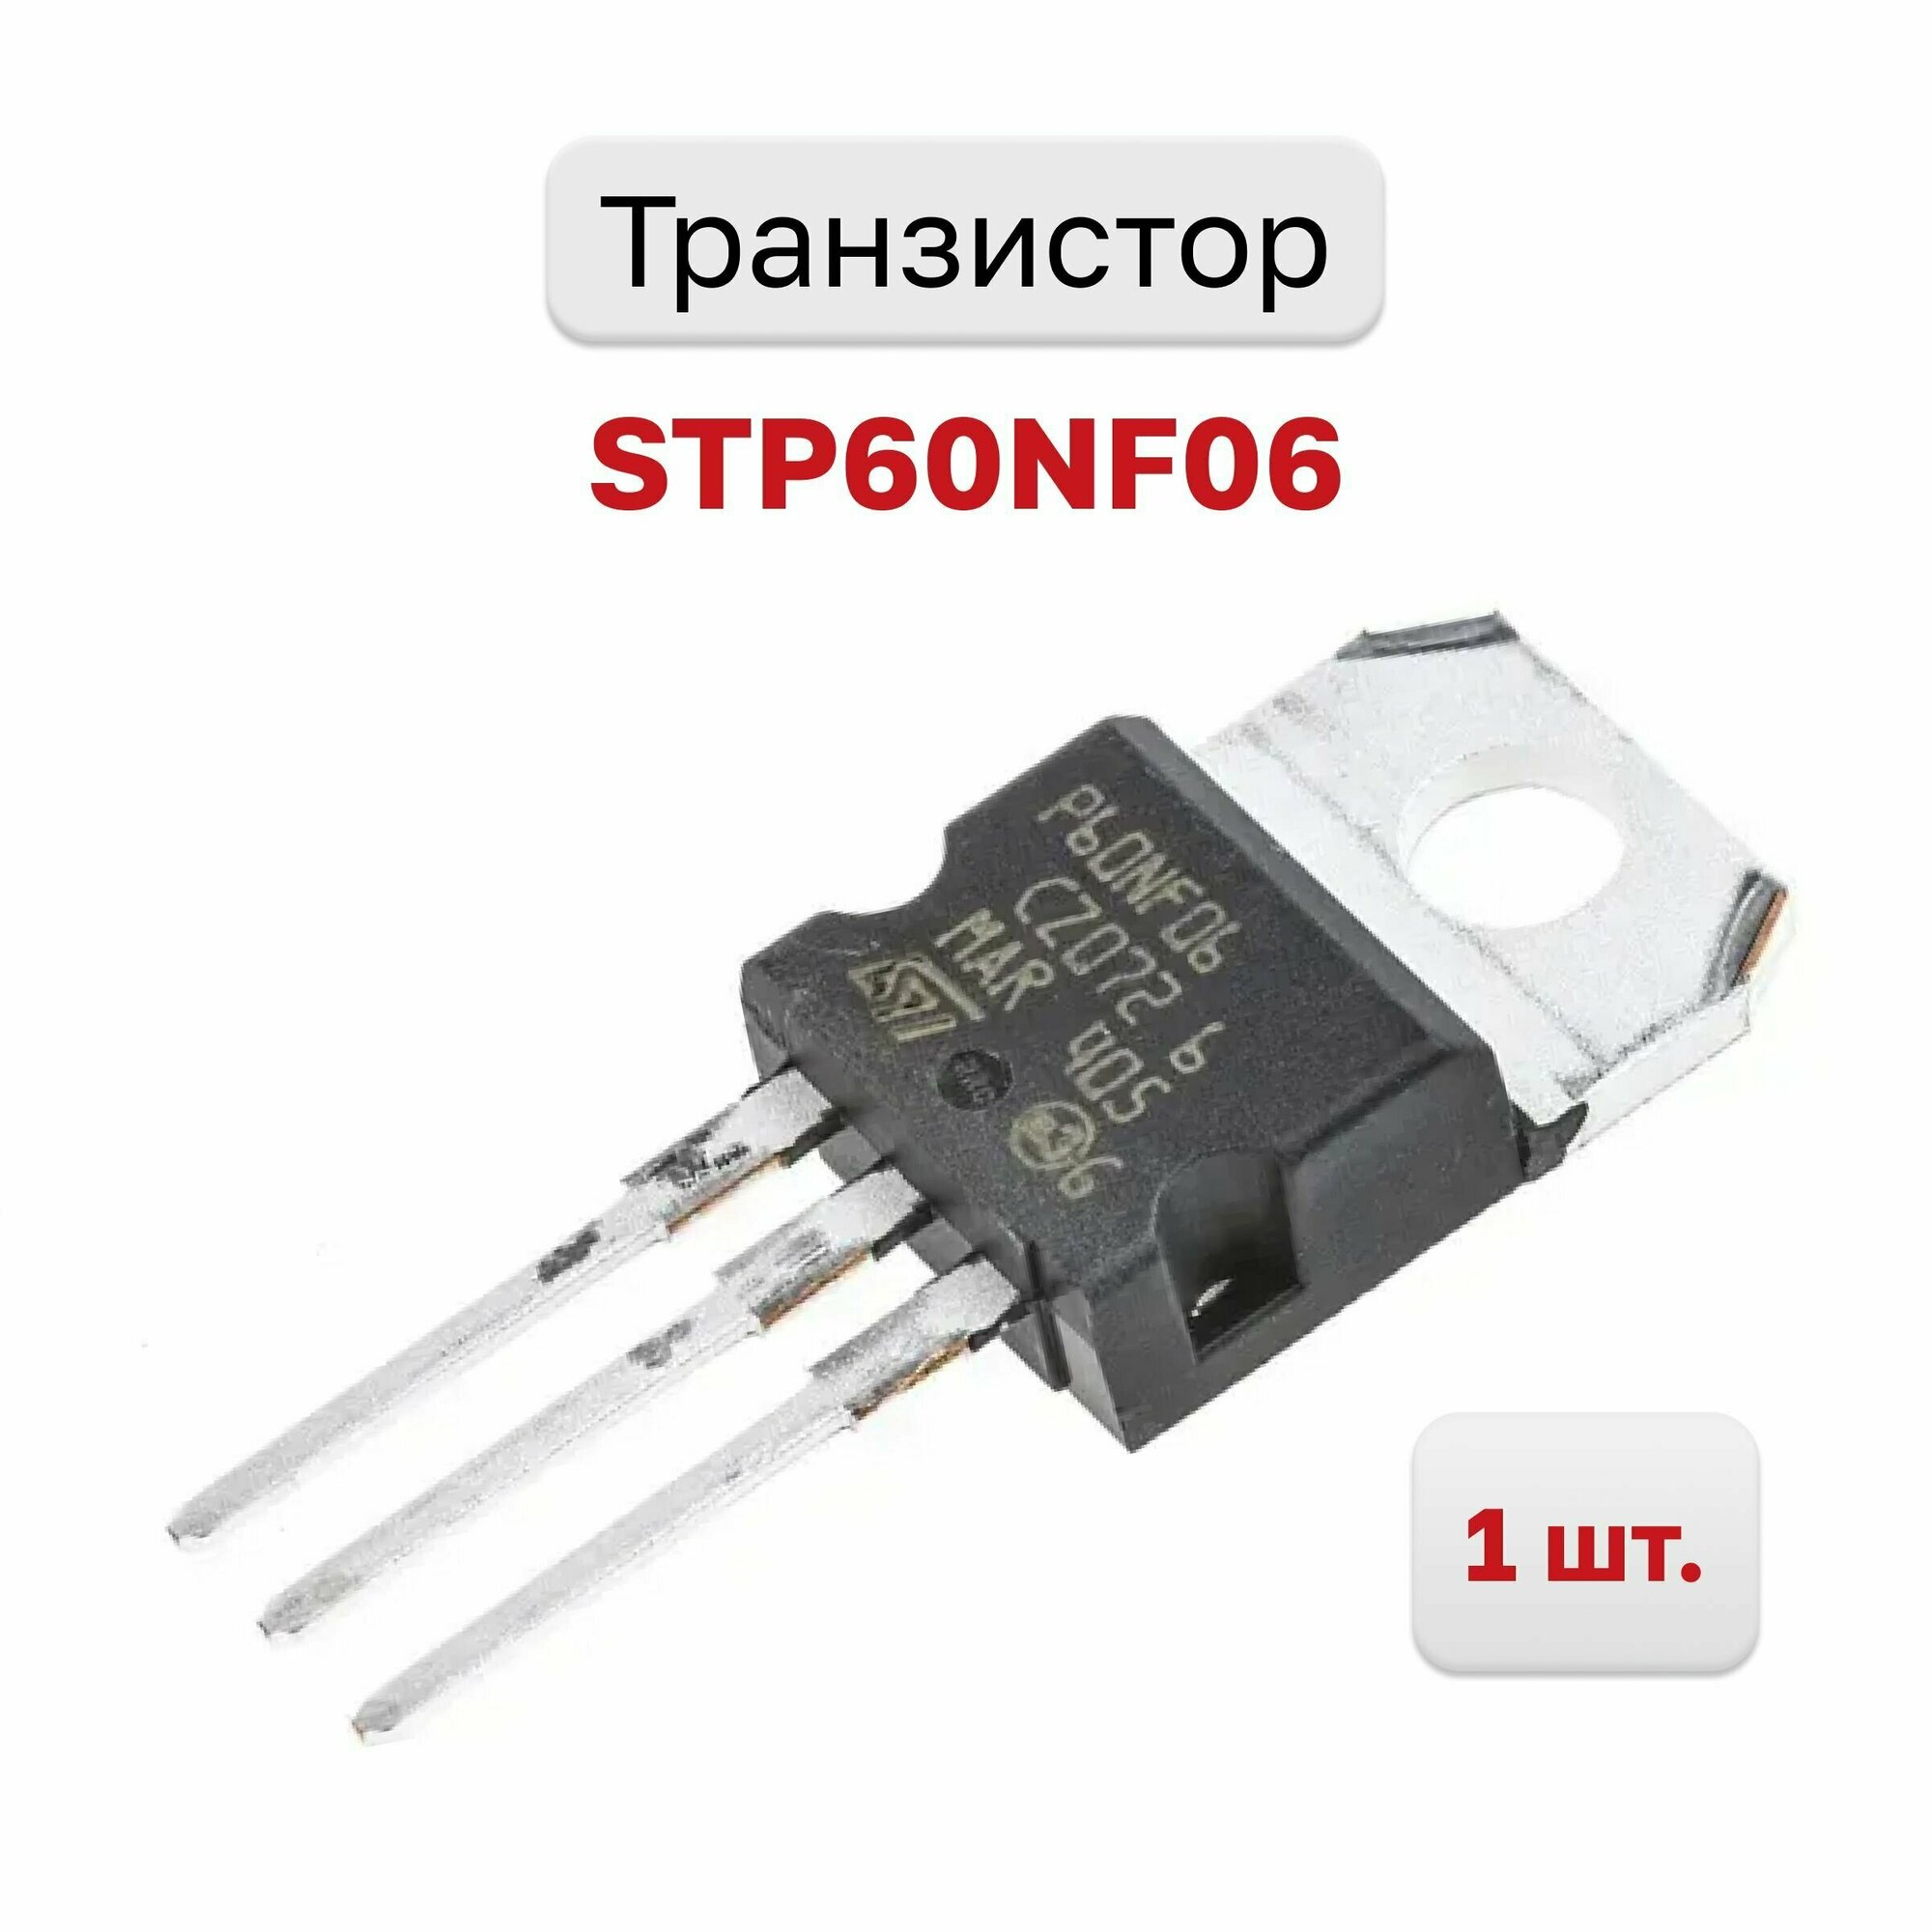 Транзистор STP60NF06, 1 шт.